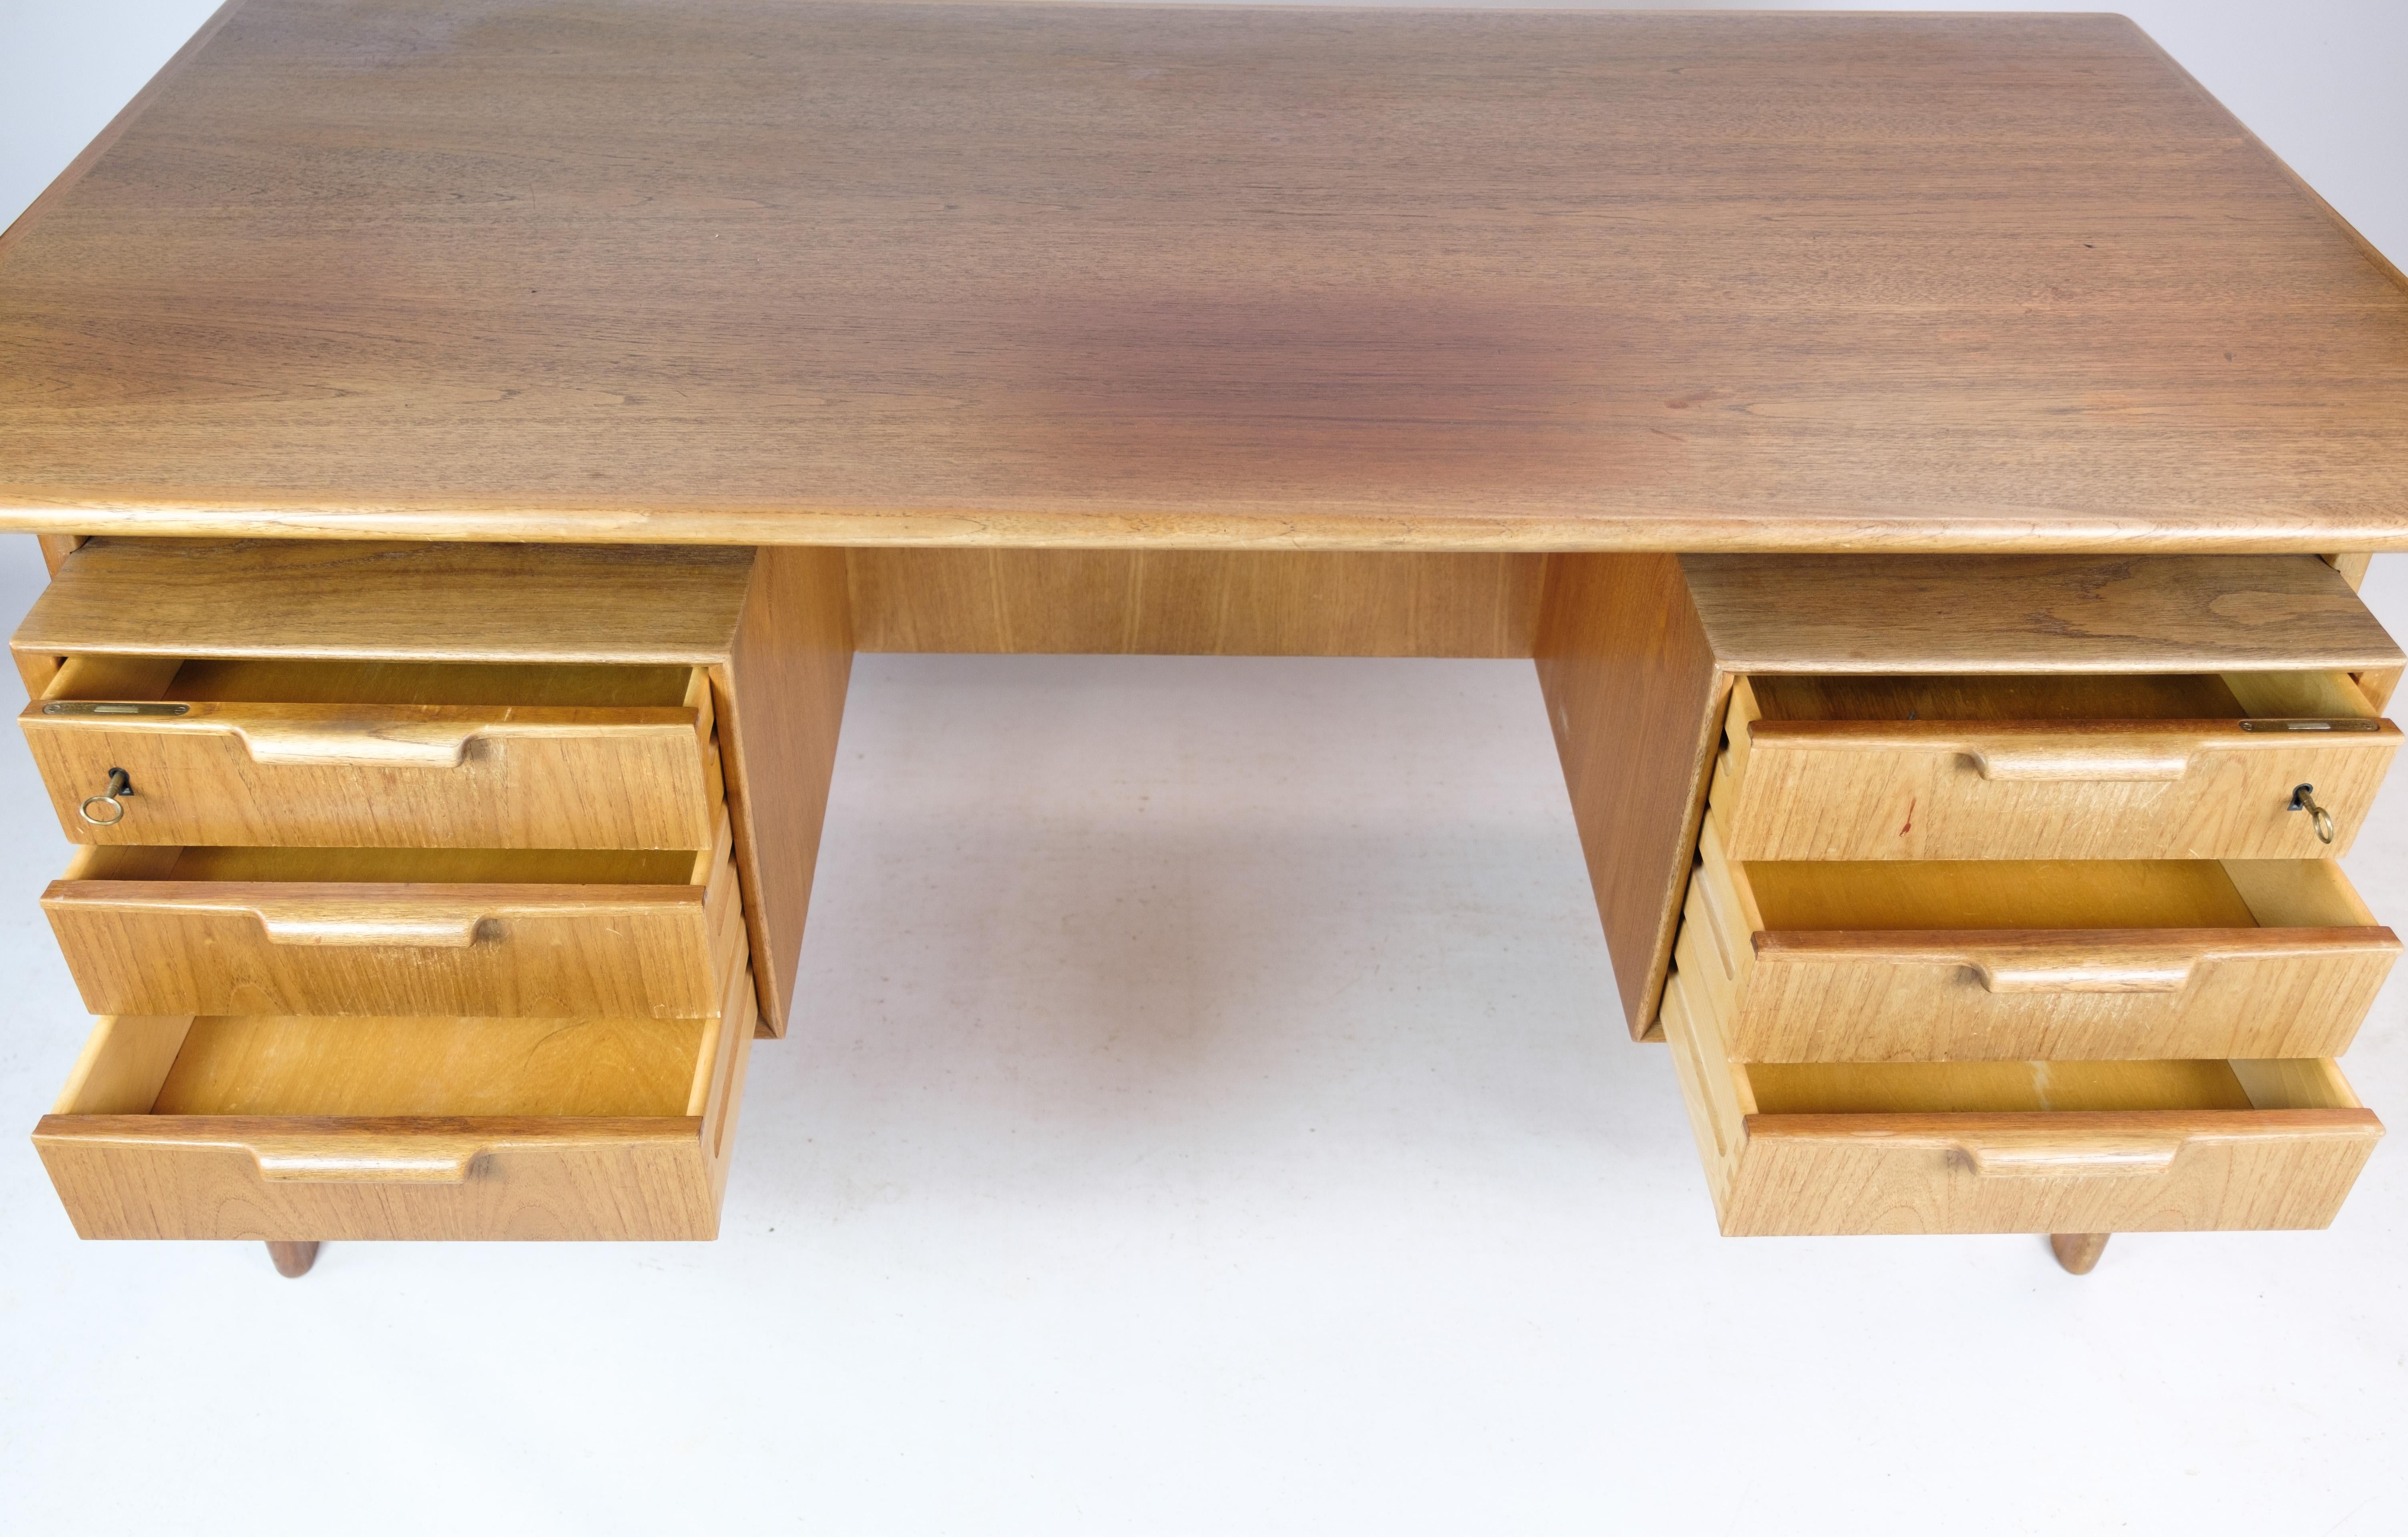 Der Schreibtisch Modell 75, ein zeitloses Stück, das von Gunni Omann entworfen und von der Omann Junior Møbelfabrik in den 1960er Jahren hergestellt wurde. Dieser Schreibtisch zeugt von exquisiter Handwerkskunst und Design-Genialität. Er ist aus